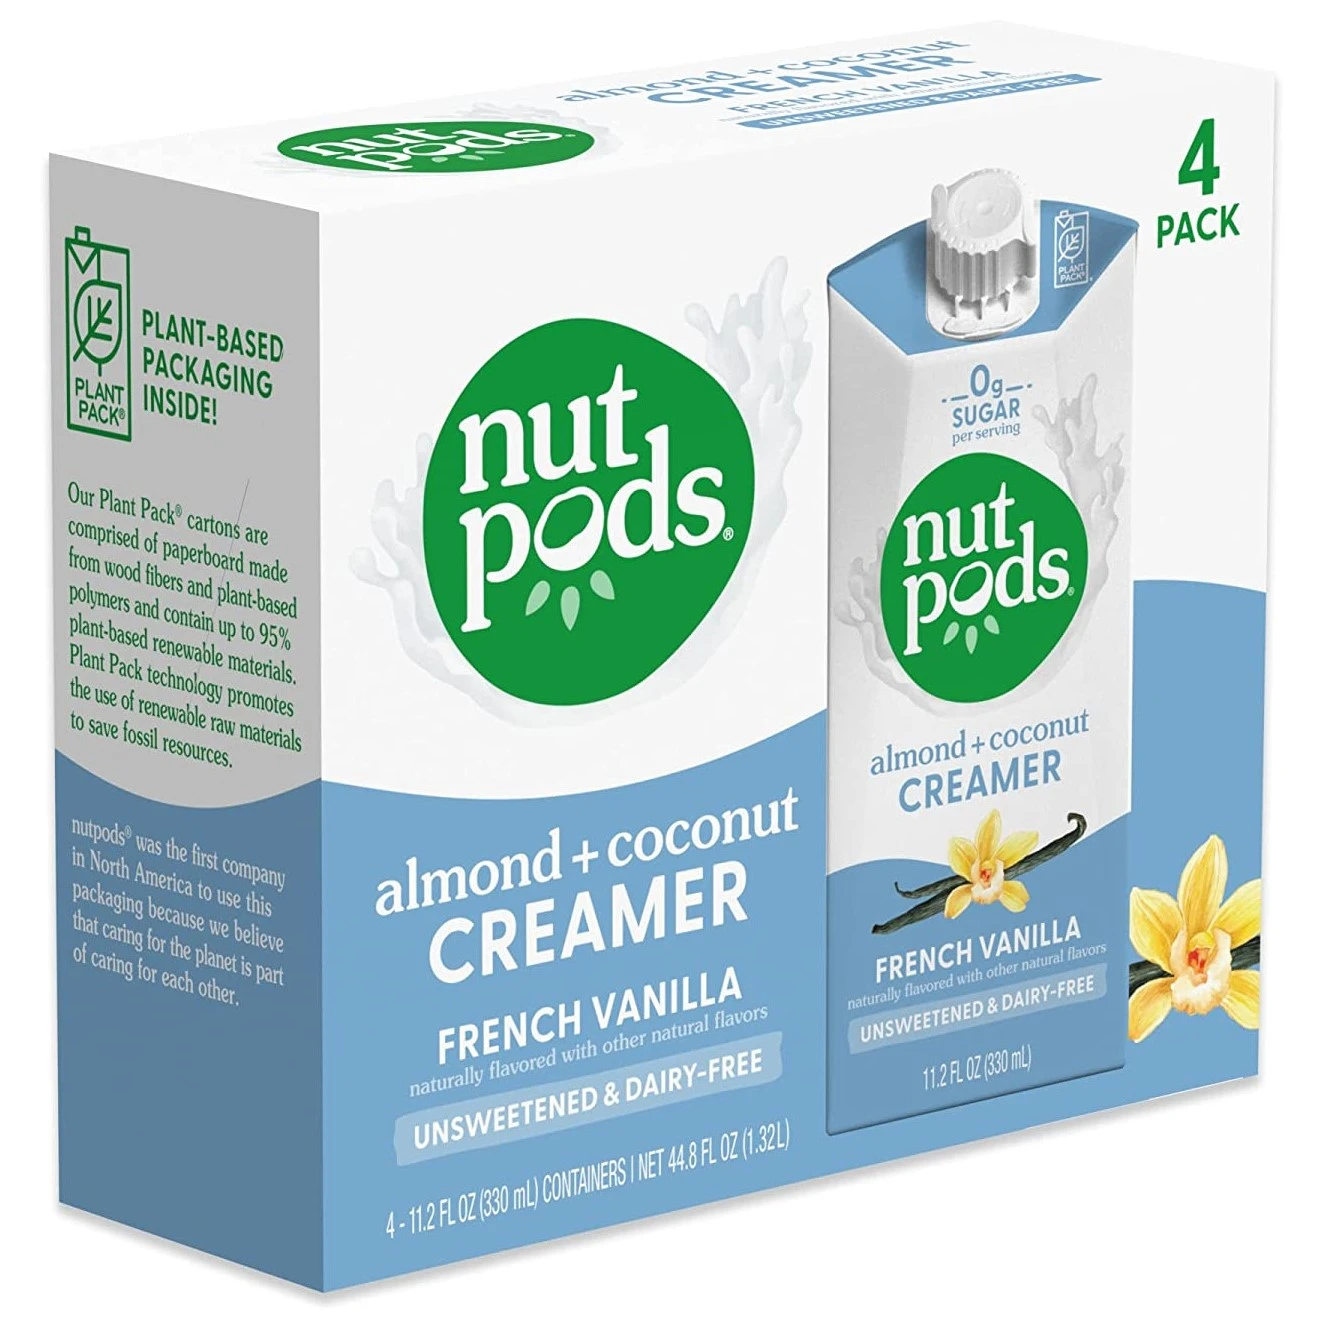 nutpods French Vanilla Creamer